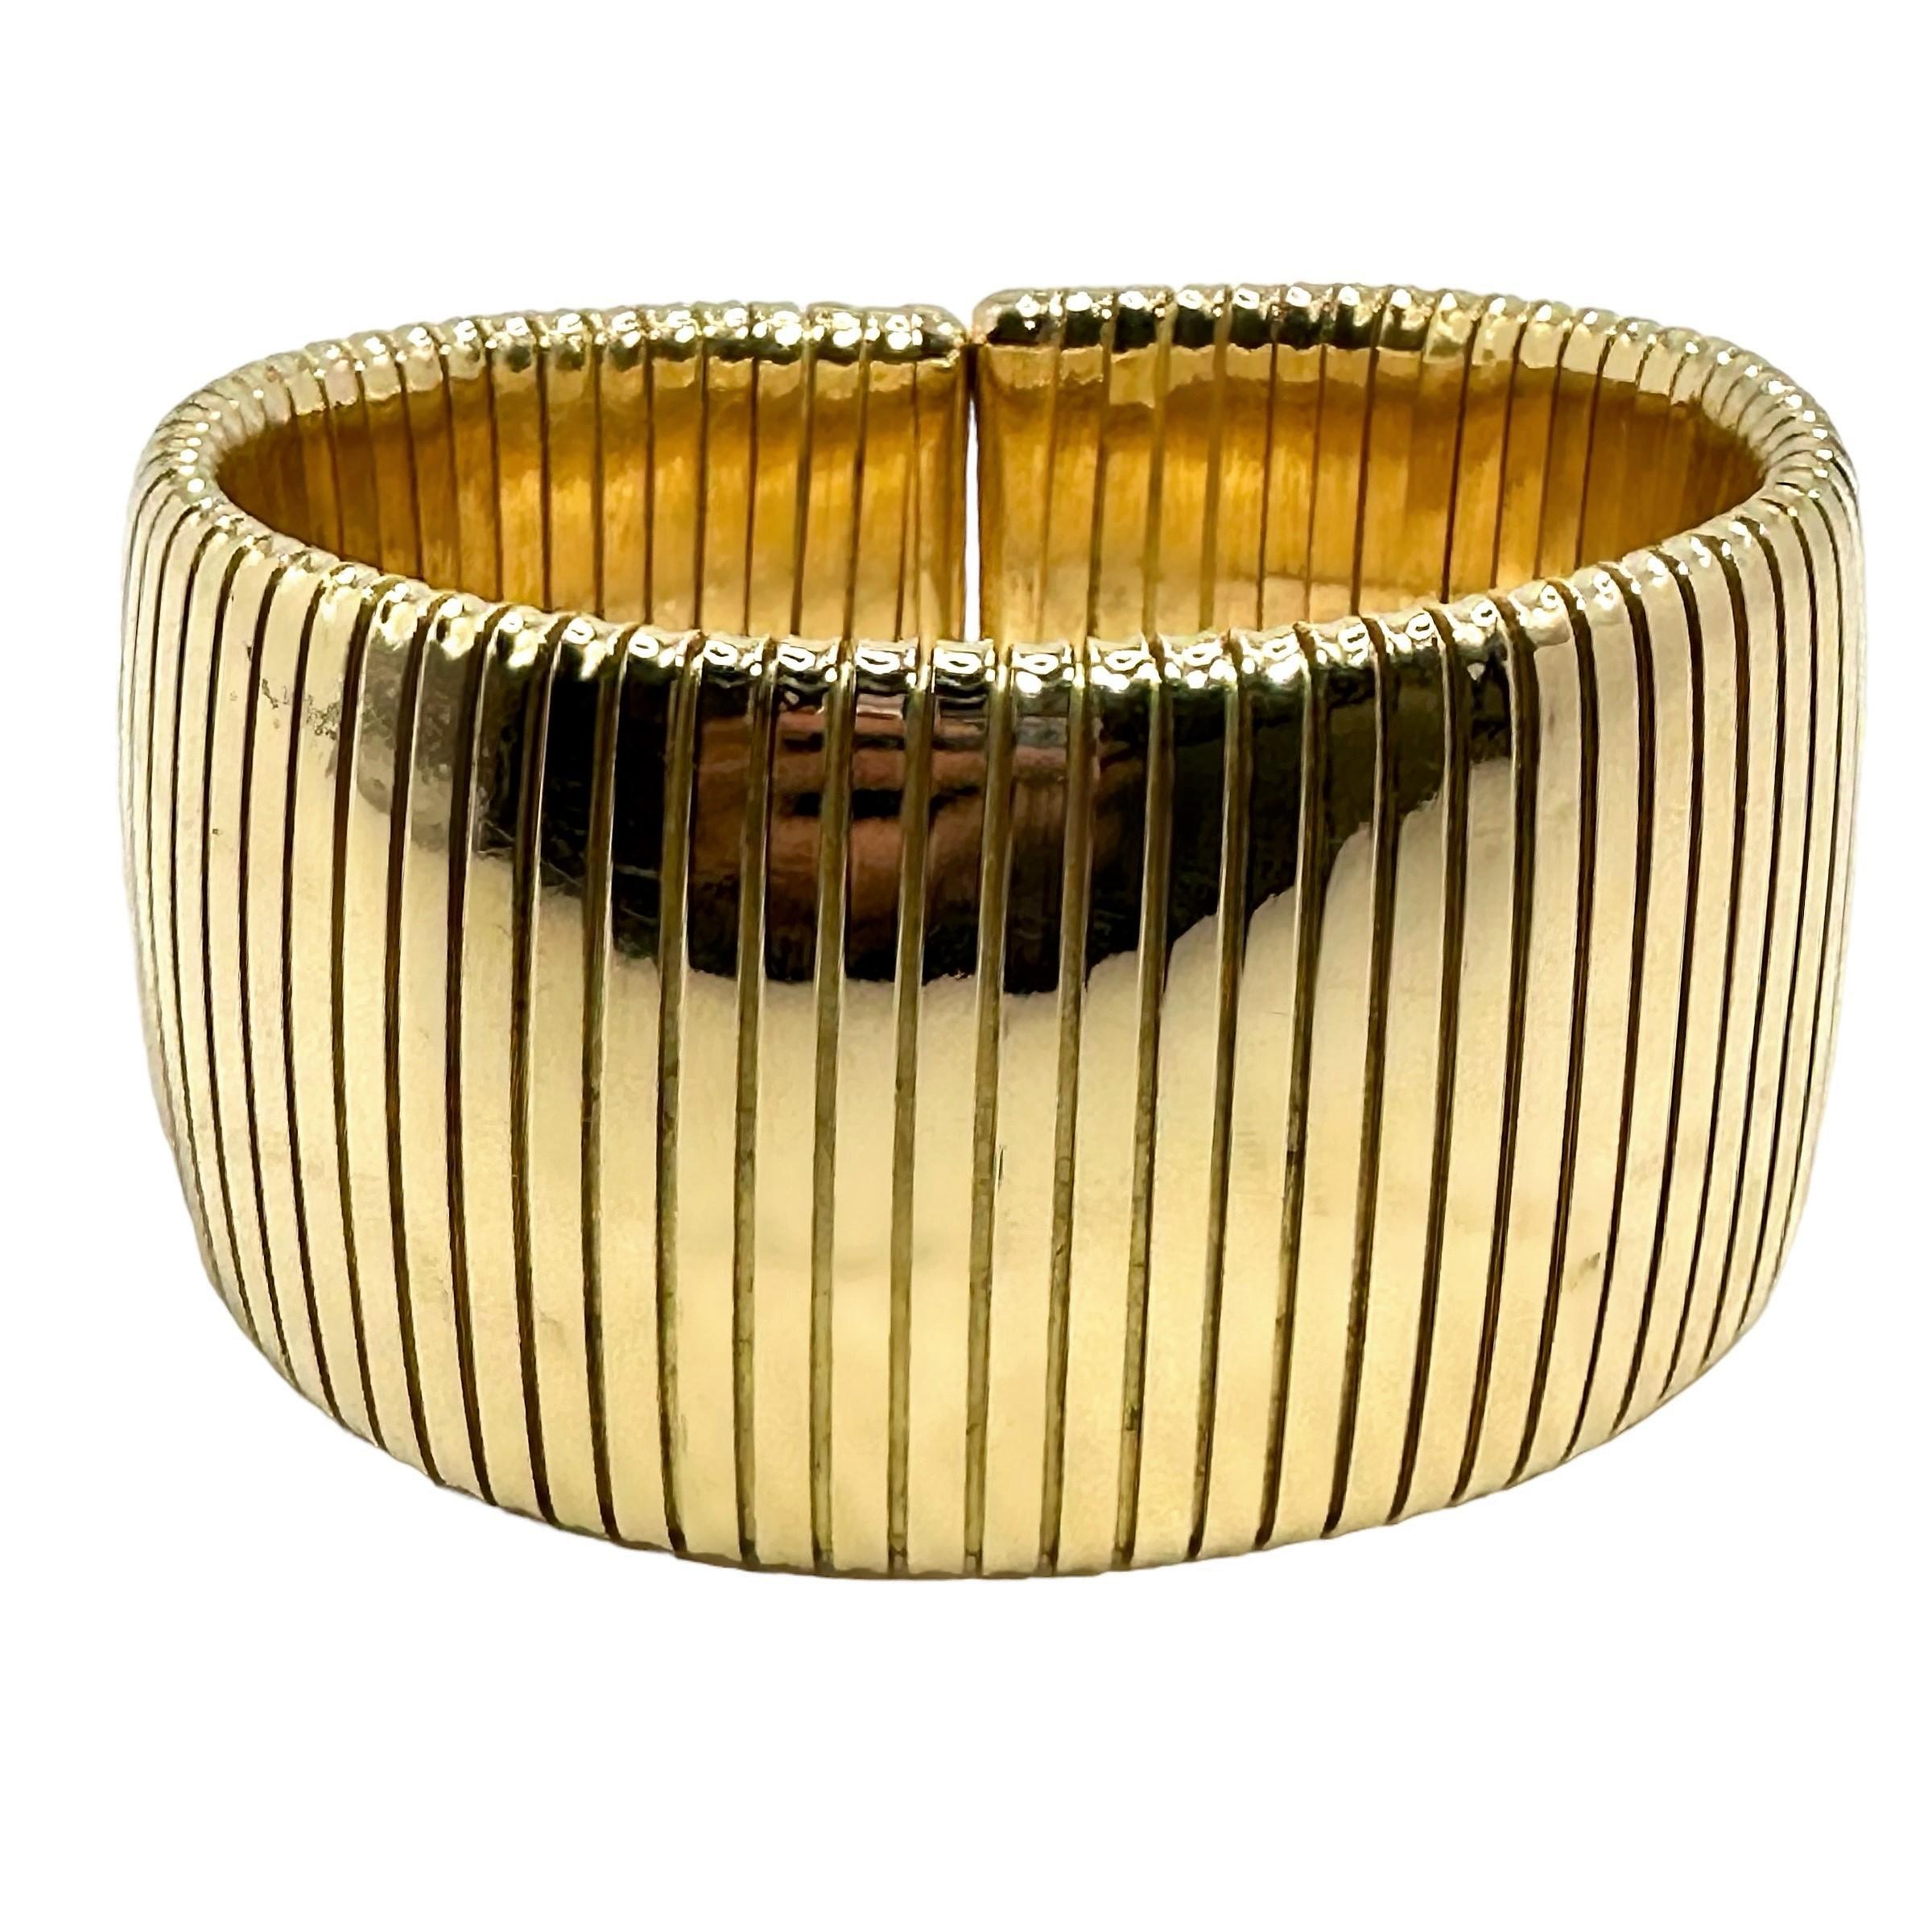 Cet étonnant bracelet italien en or jaune 18 carats se distingue véritablement dans le domaine des tubogas vintage. Il mesure une largeur considérable de 1 1/4 pouce au centre et se rétrécit légèrement jusqu'à 7/8 pouce à l'arrière. Le dos ouvert